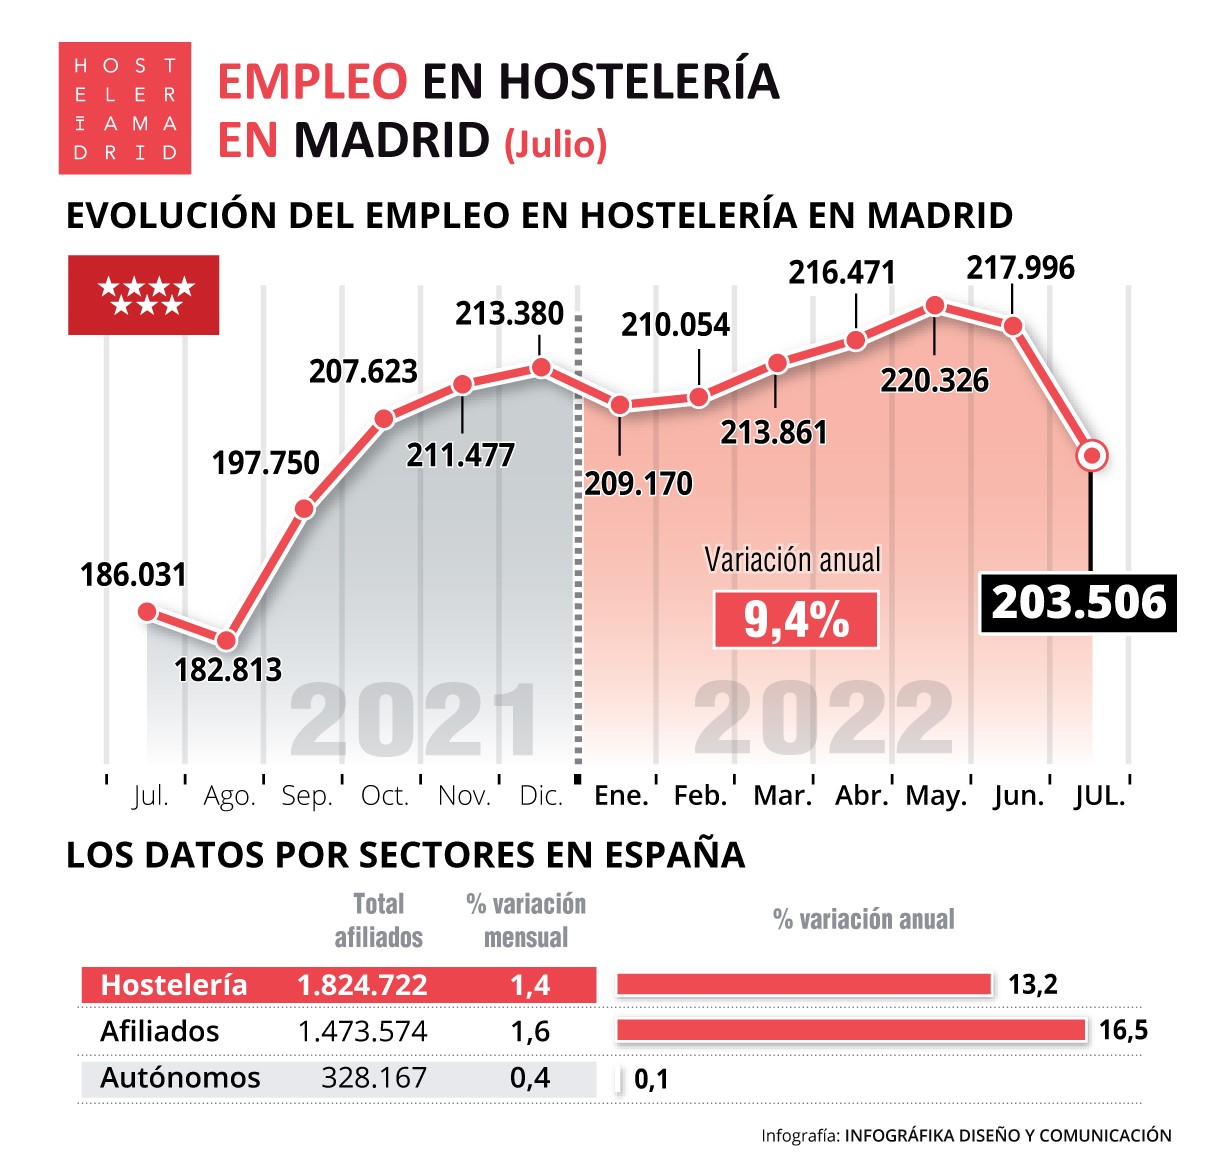 La hostelería de Madrid registra 203.506 trabajadores inscritos en la Seguridad Social - La Viña